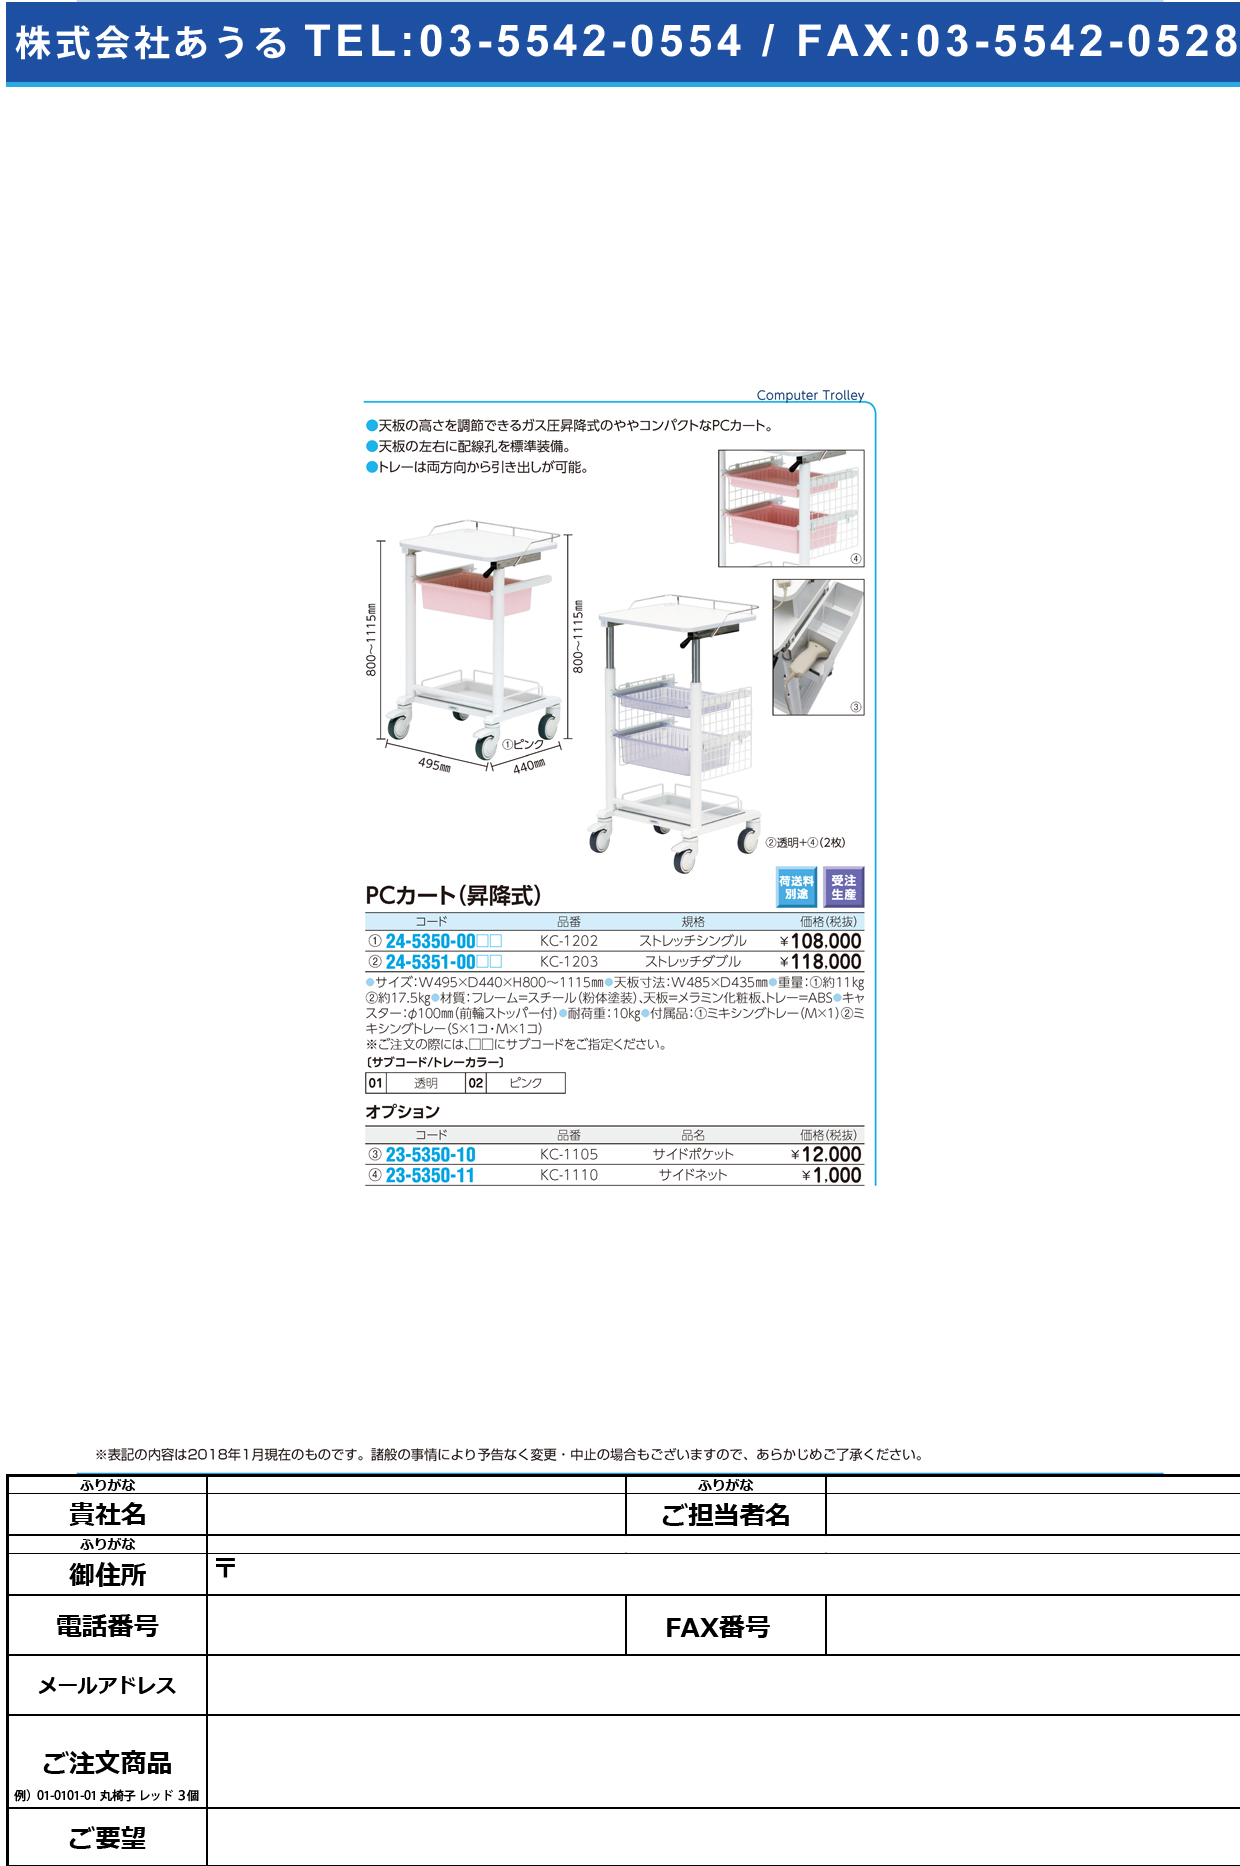 (23-5350-11)サイドネット KC-1110 ｻｲﾄﾞﾈｯﾄ(ケルン)【1枚単位】【2019年カタログ商品】